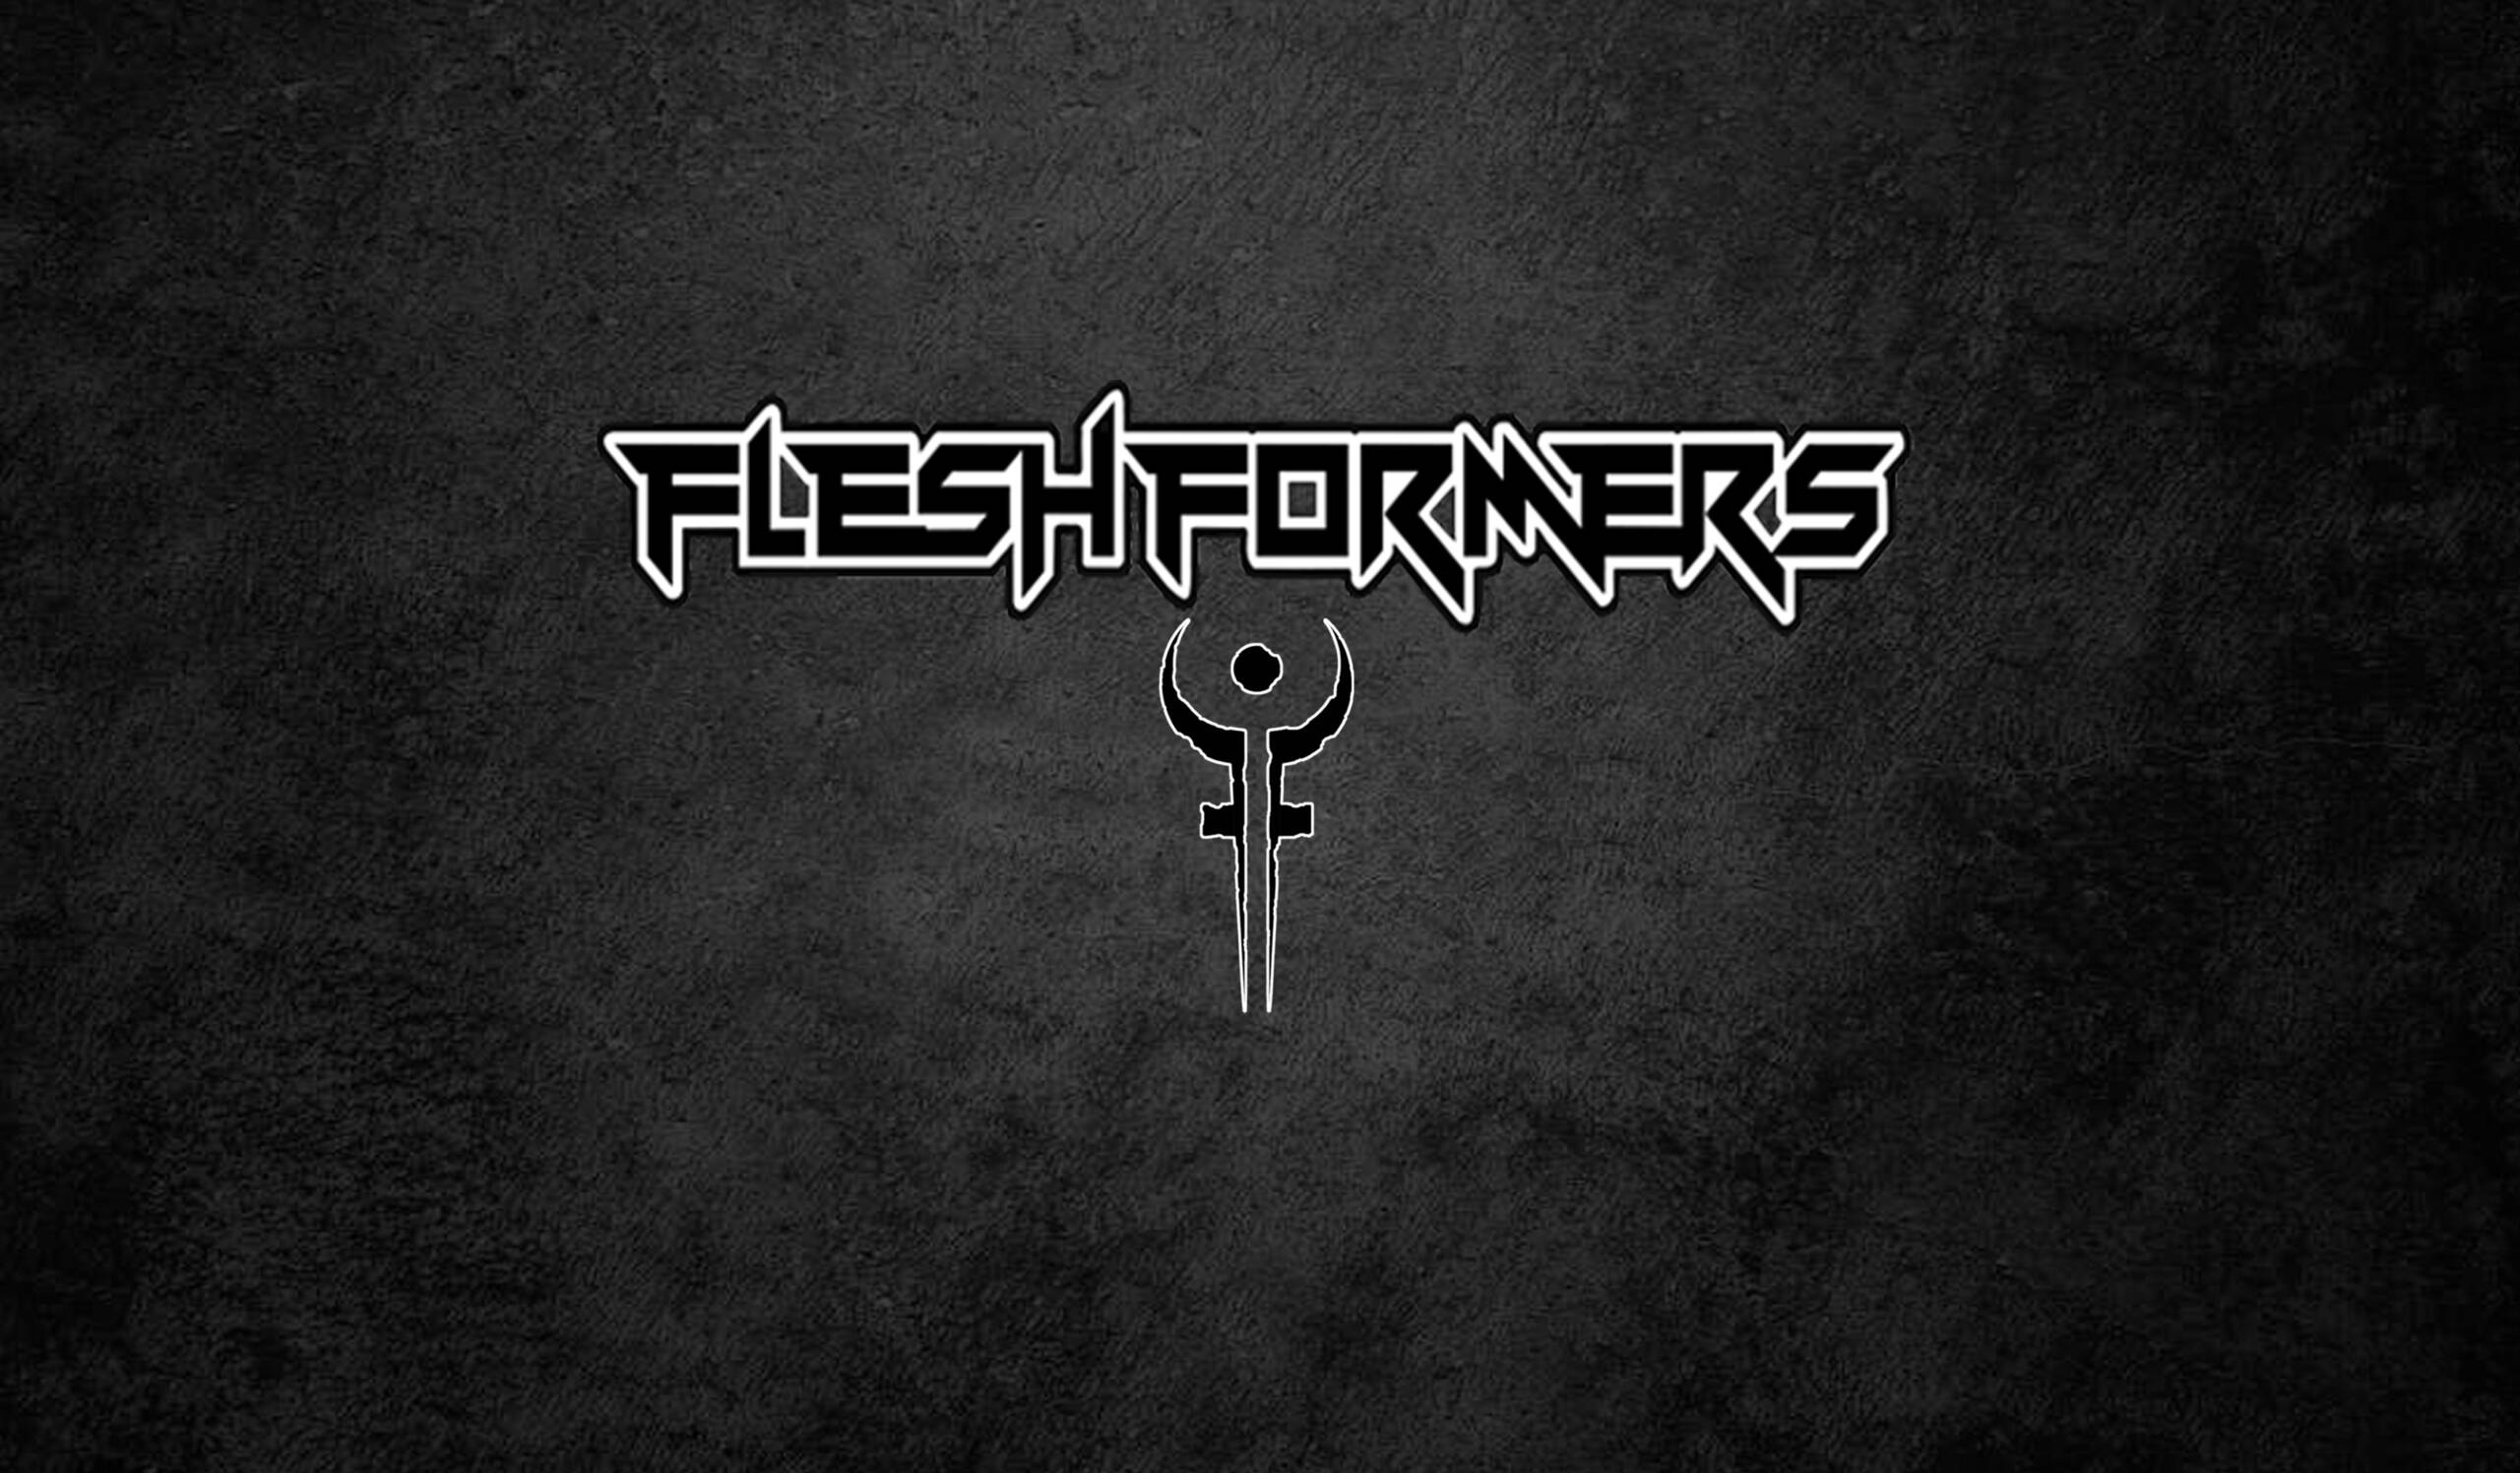 Fleshformers background logo